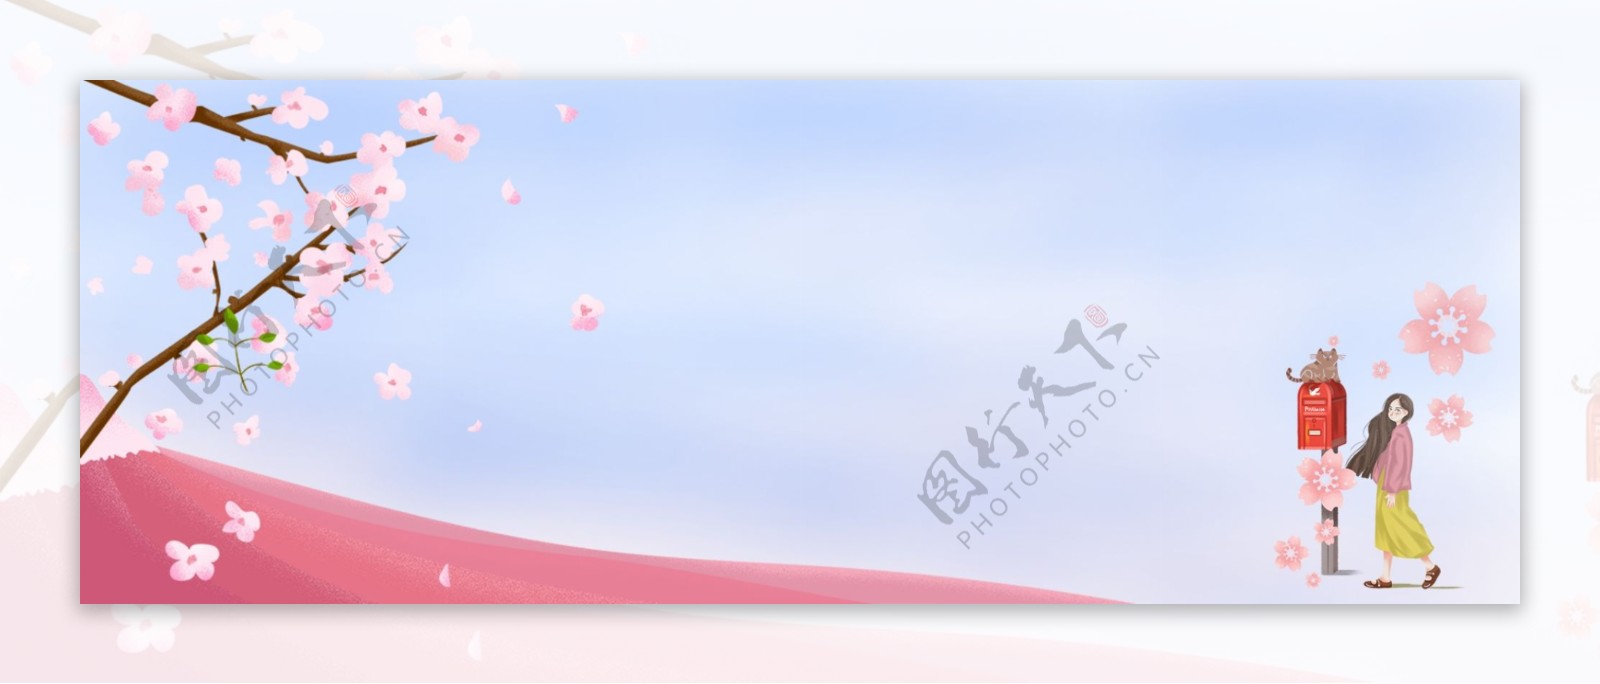 樱花节手绘唯美邮箱小女孩背景